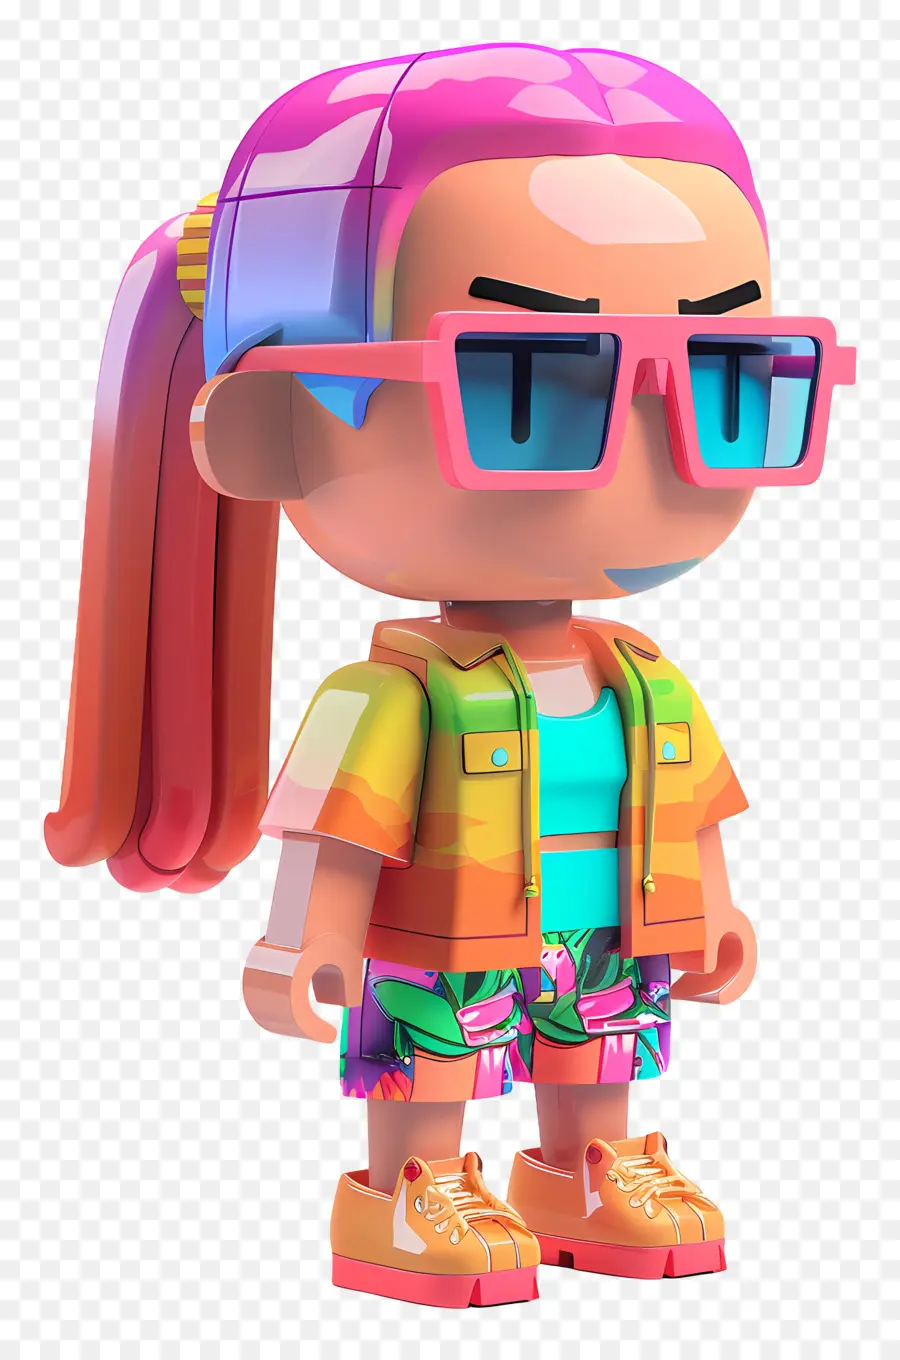 ROBLOX Girl 3D Nhân vật sáng màu hồng râm màu xanh lam ba lô - Nhân vật 3D với mái tóc màu hồng và kính râm